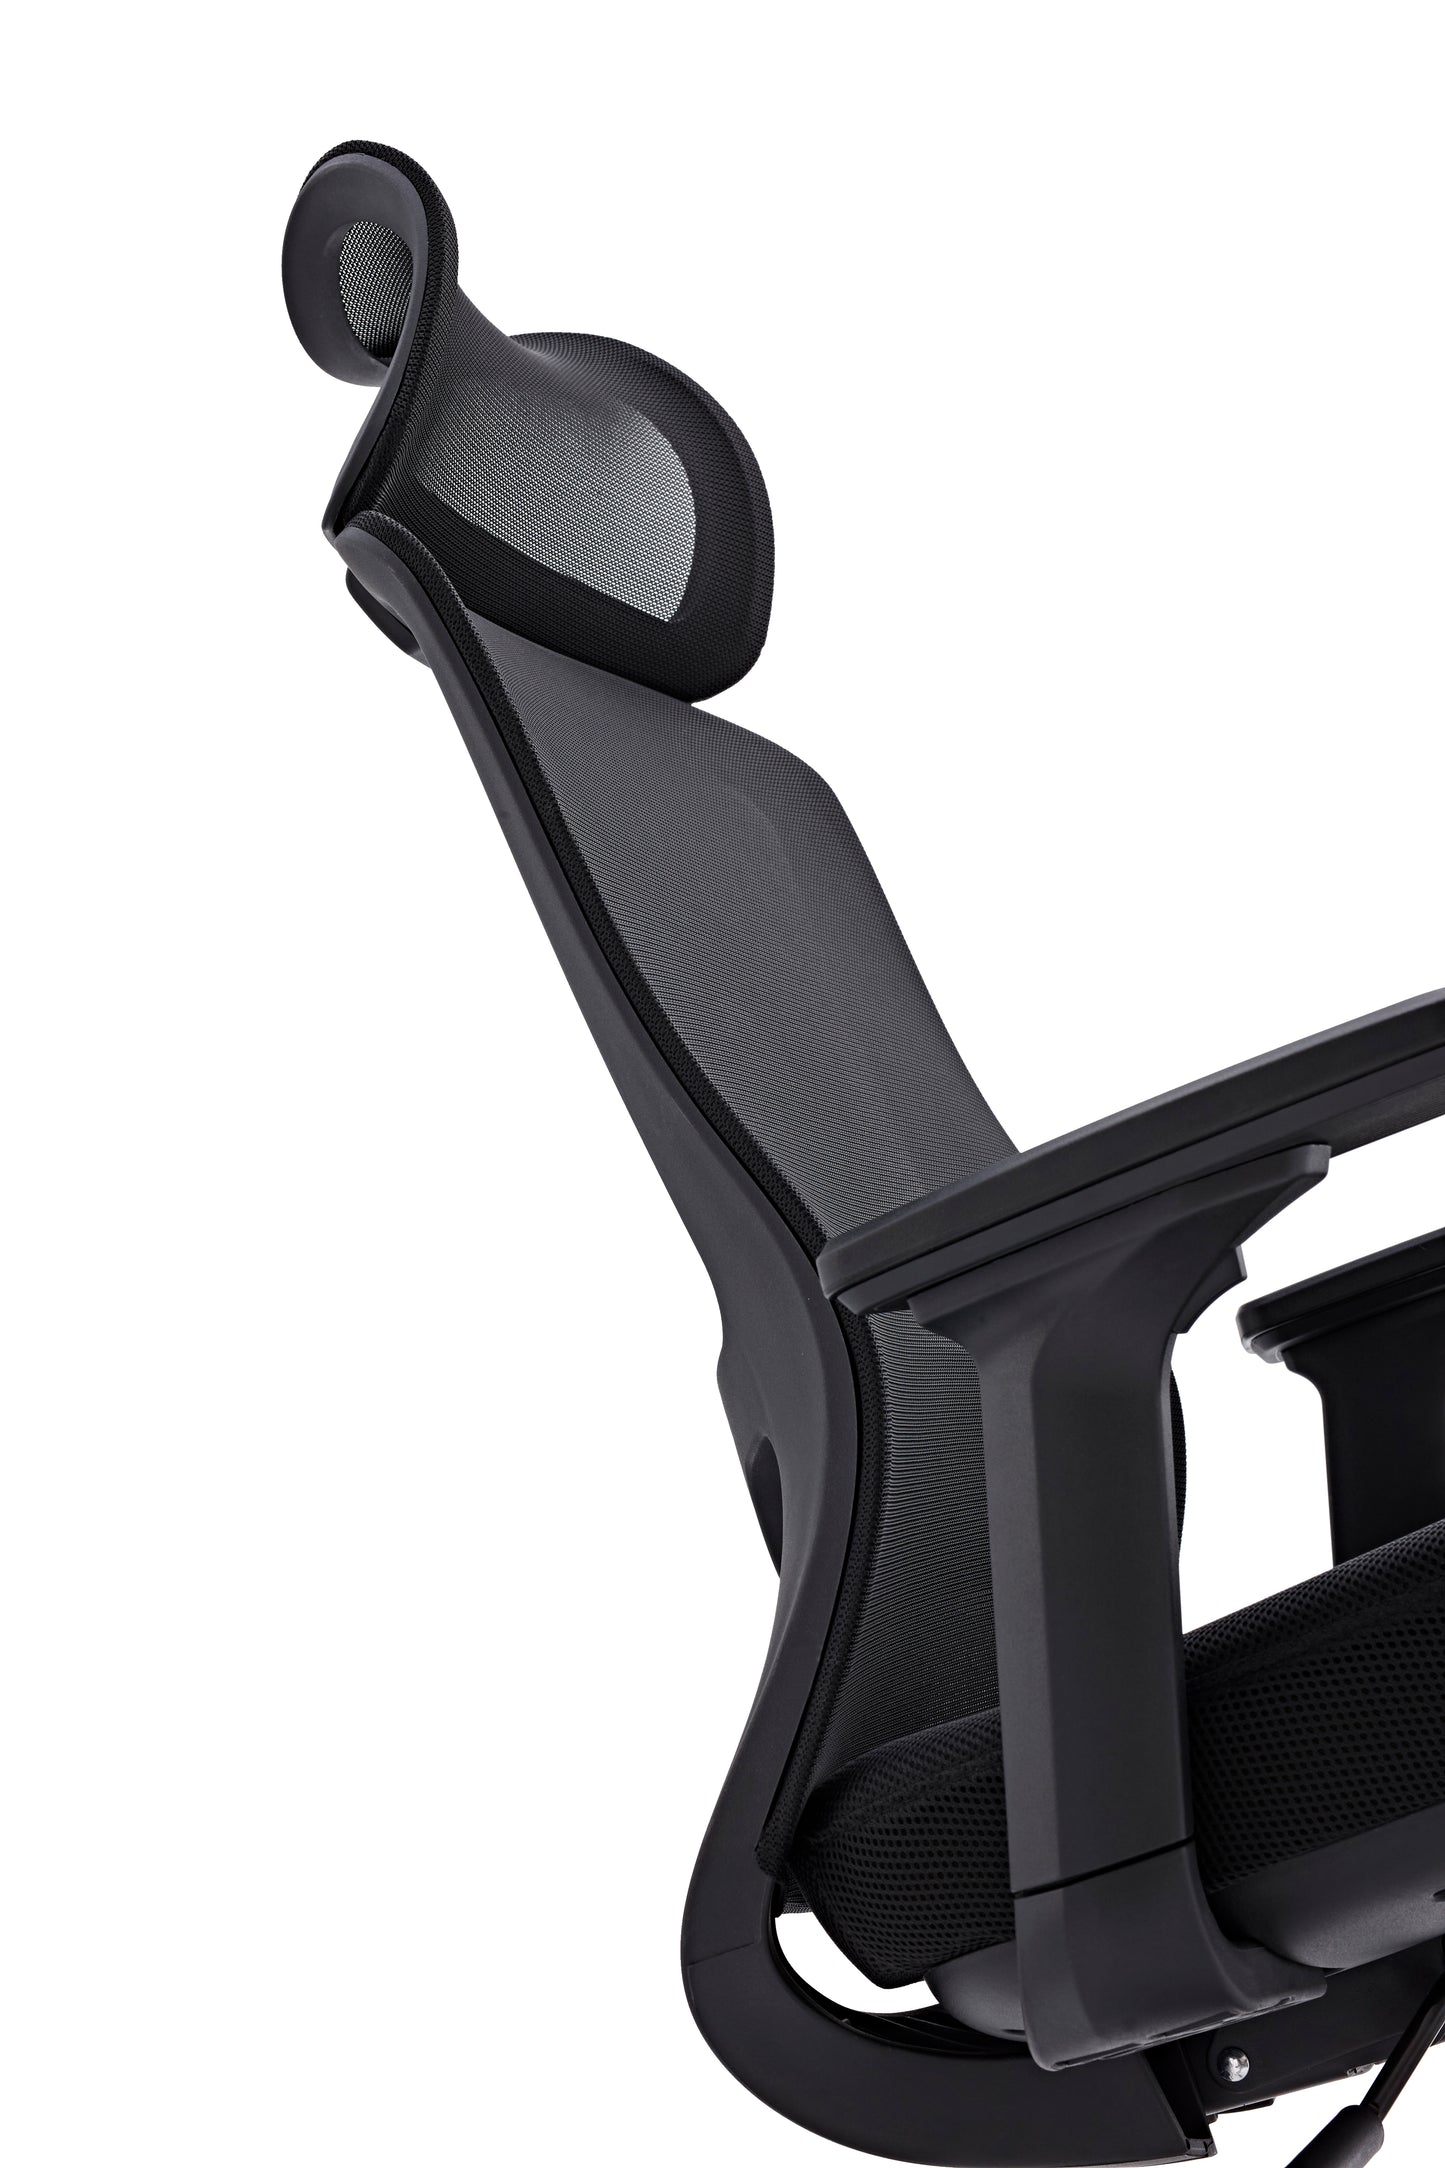 H65C 高背人體工學椅